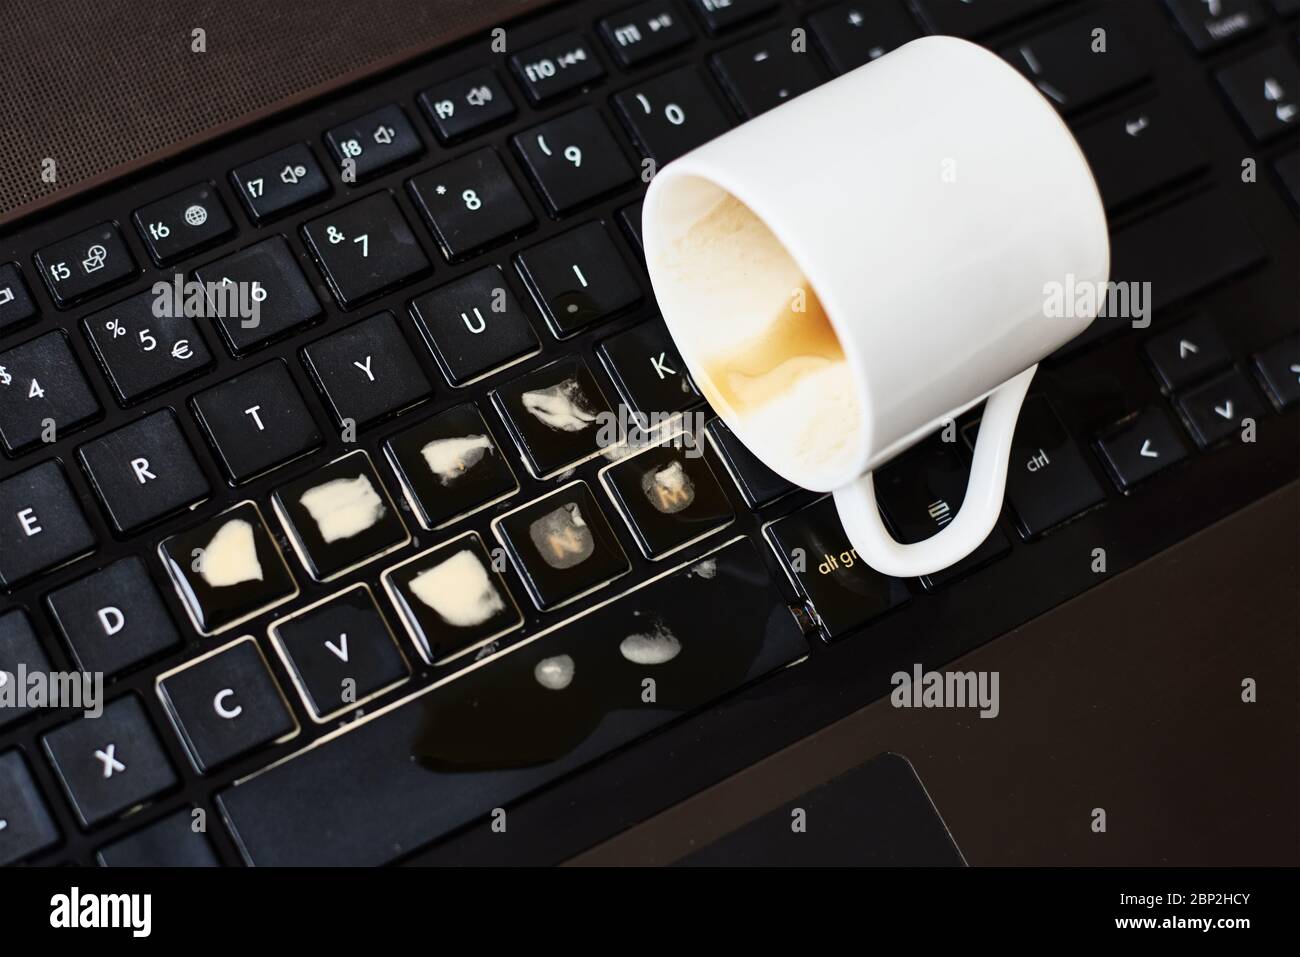 Verschütten Sie Kaffee aus der weißen Tasse auf der Laptop-Tastatur des  Computers.Beschädigung des Computers durch verschüttete Flüssigkeit  Stockfotografie - Alamy